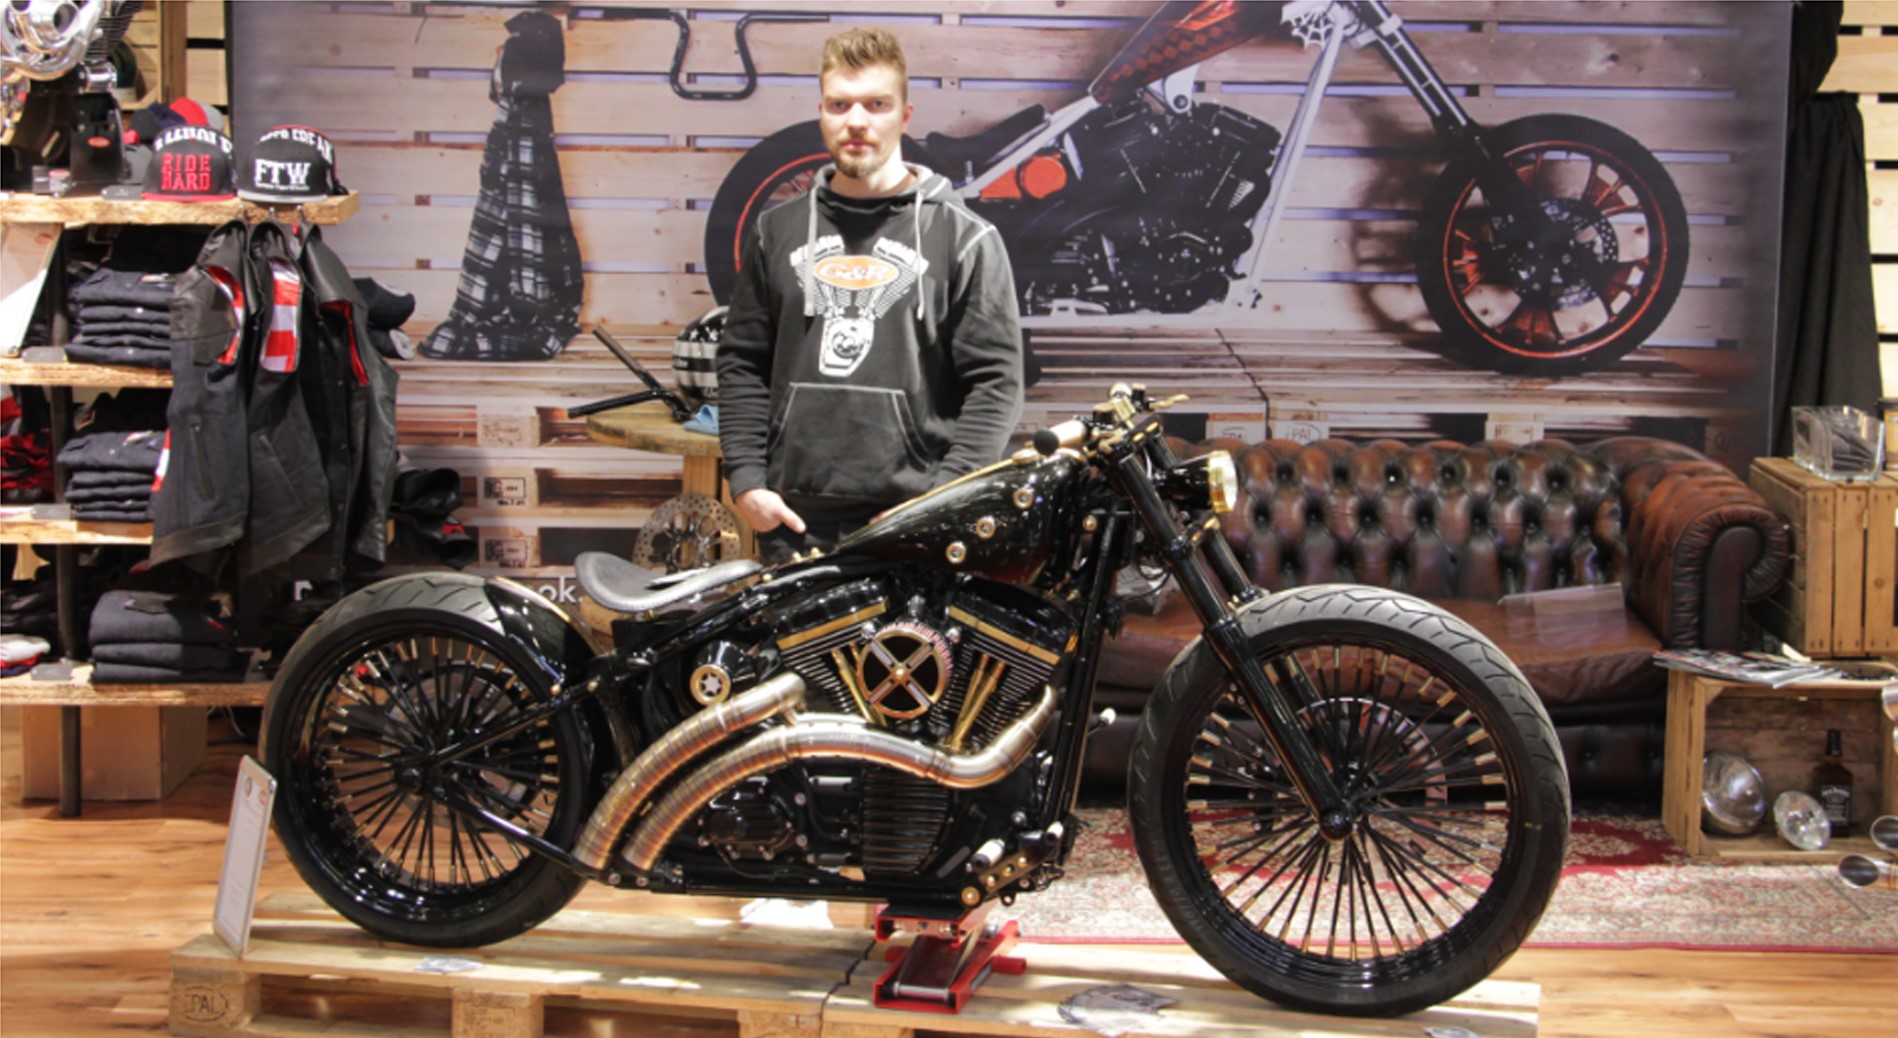 Harley Davidson in der G&R Motorrad Werkstatt in Braunatal